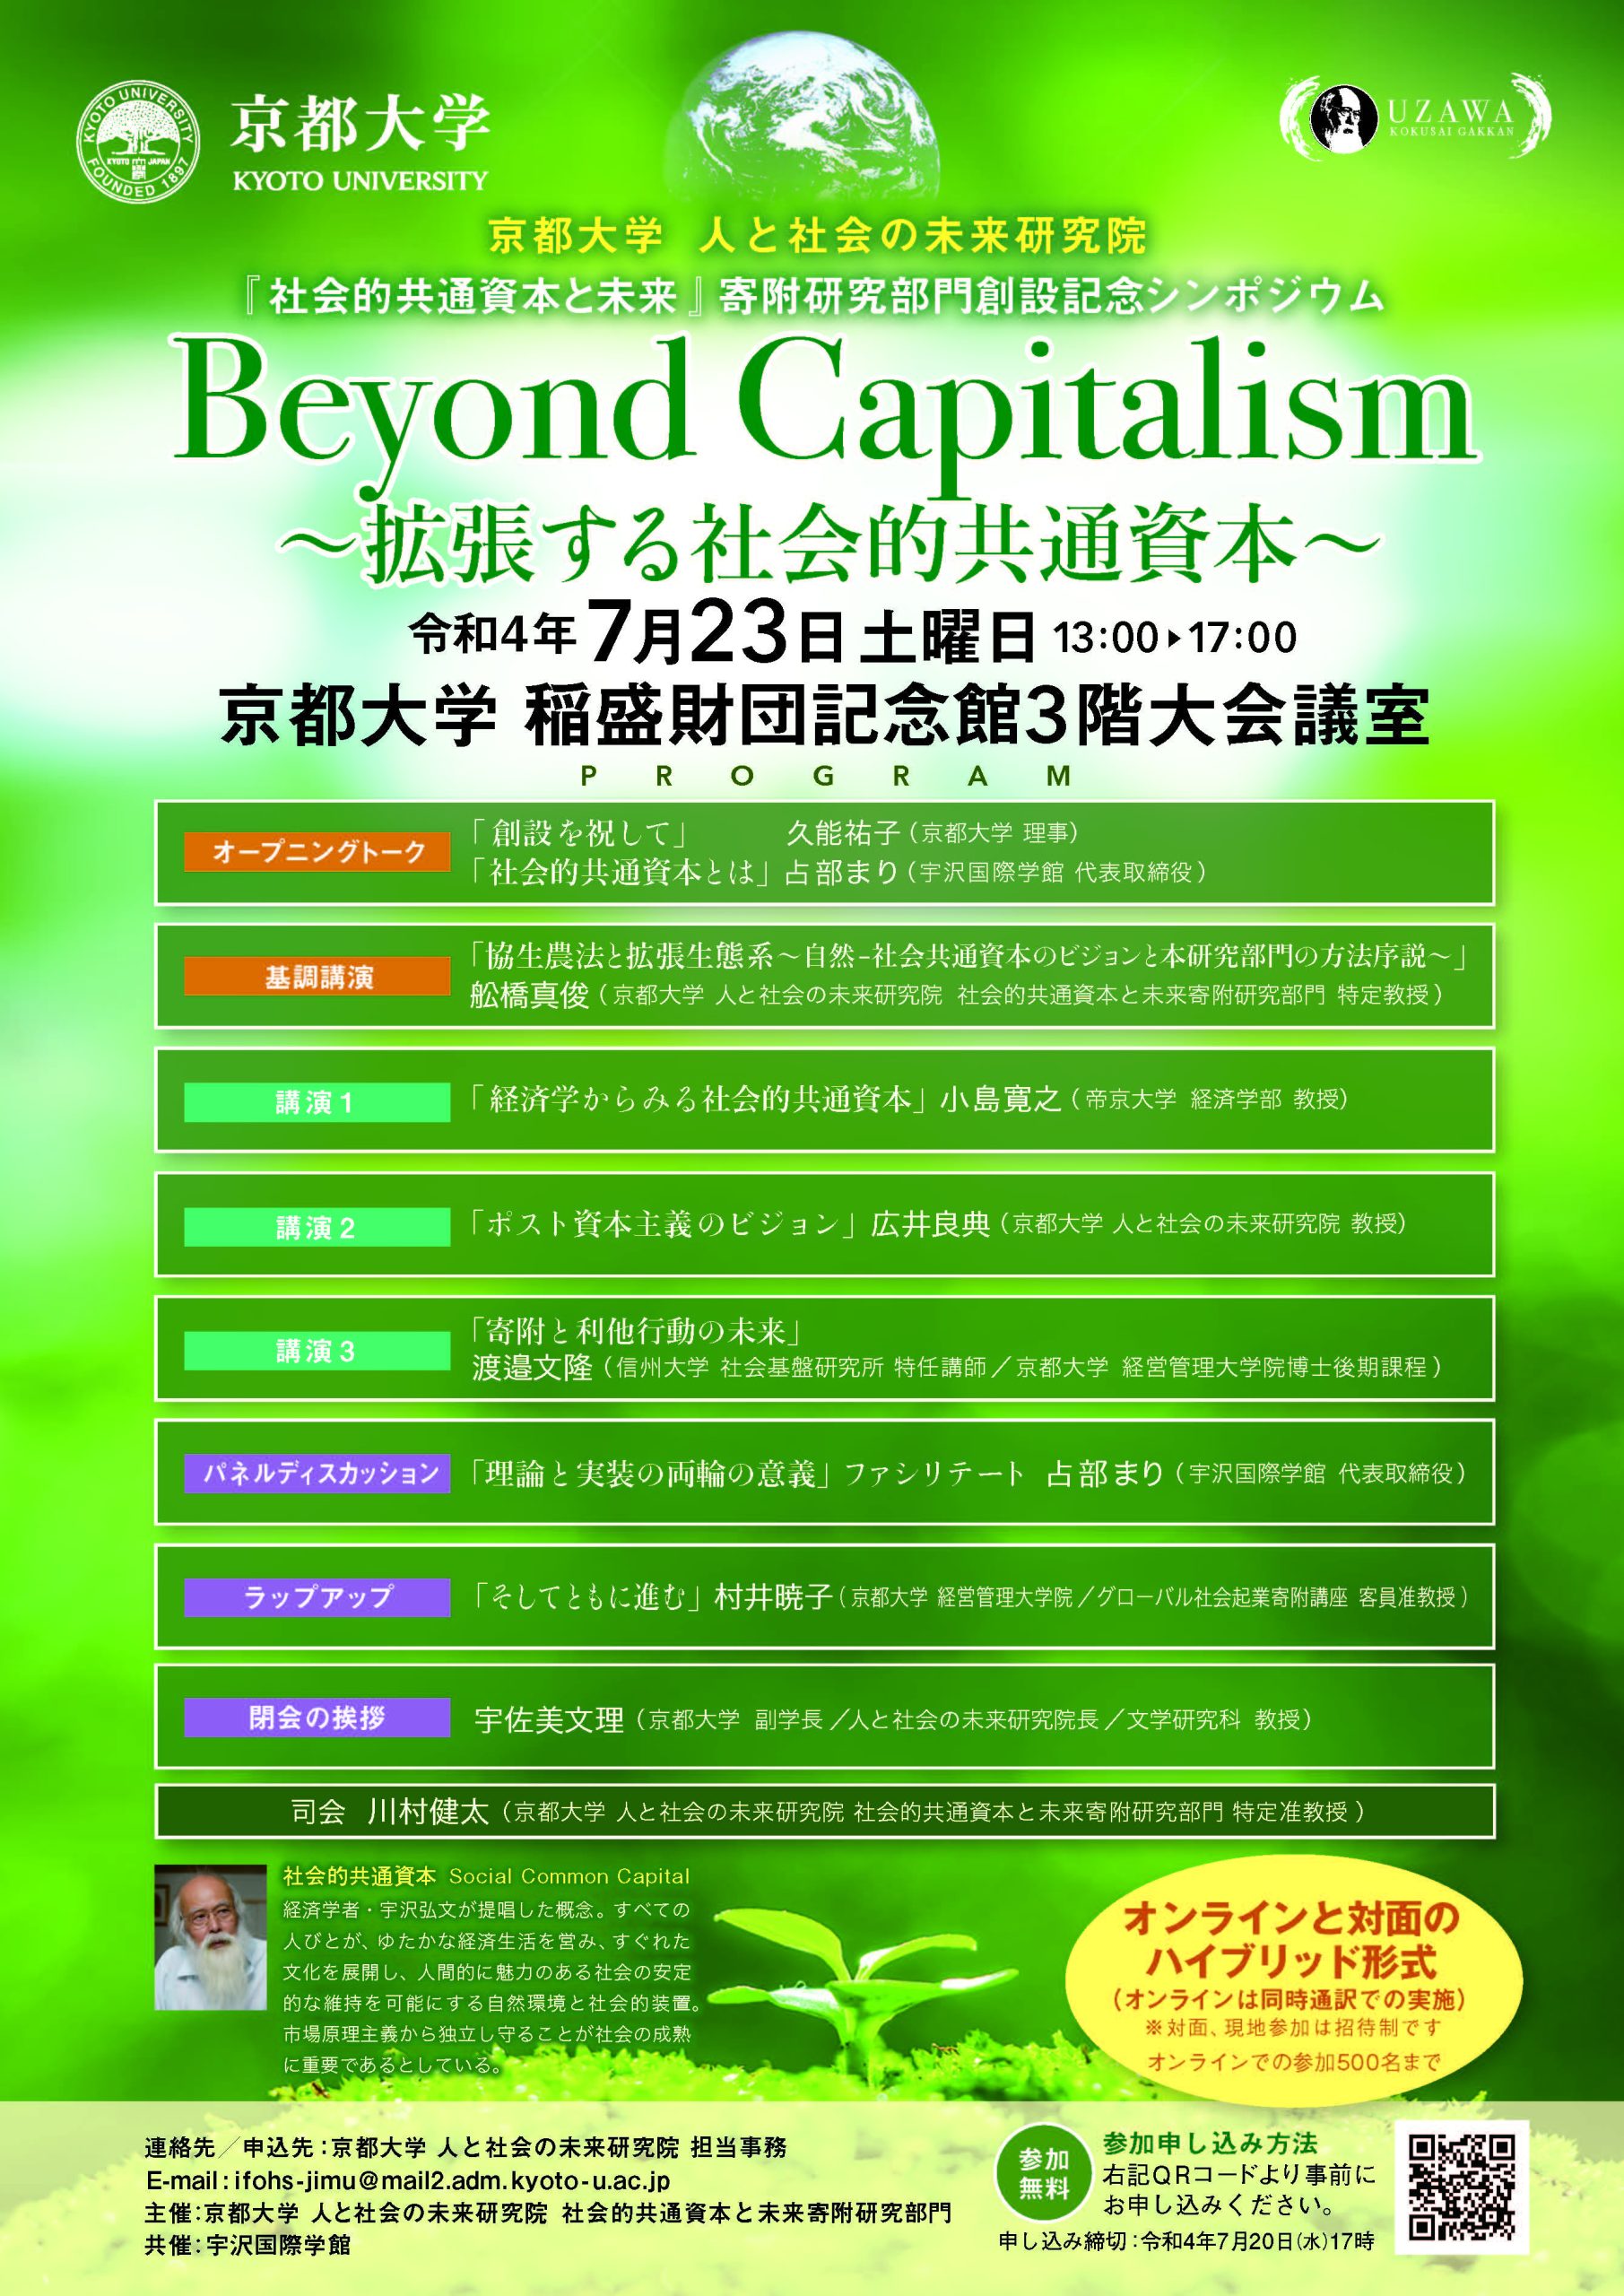 京都大学人と社会の未来研究院 社会的共通資本と未来寄附研究部門創設記念シンポジウム　Beyond Capitalism ～拡張する社会的共通資本～の開催について